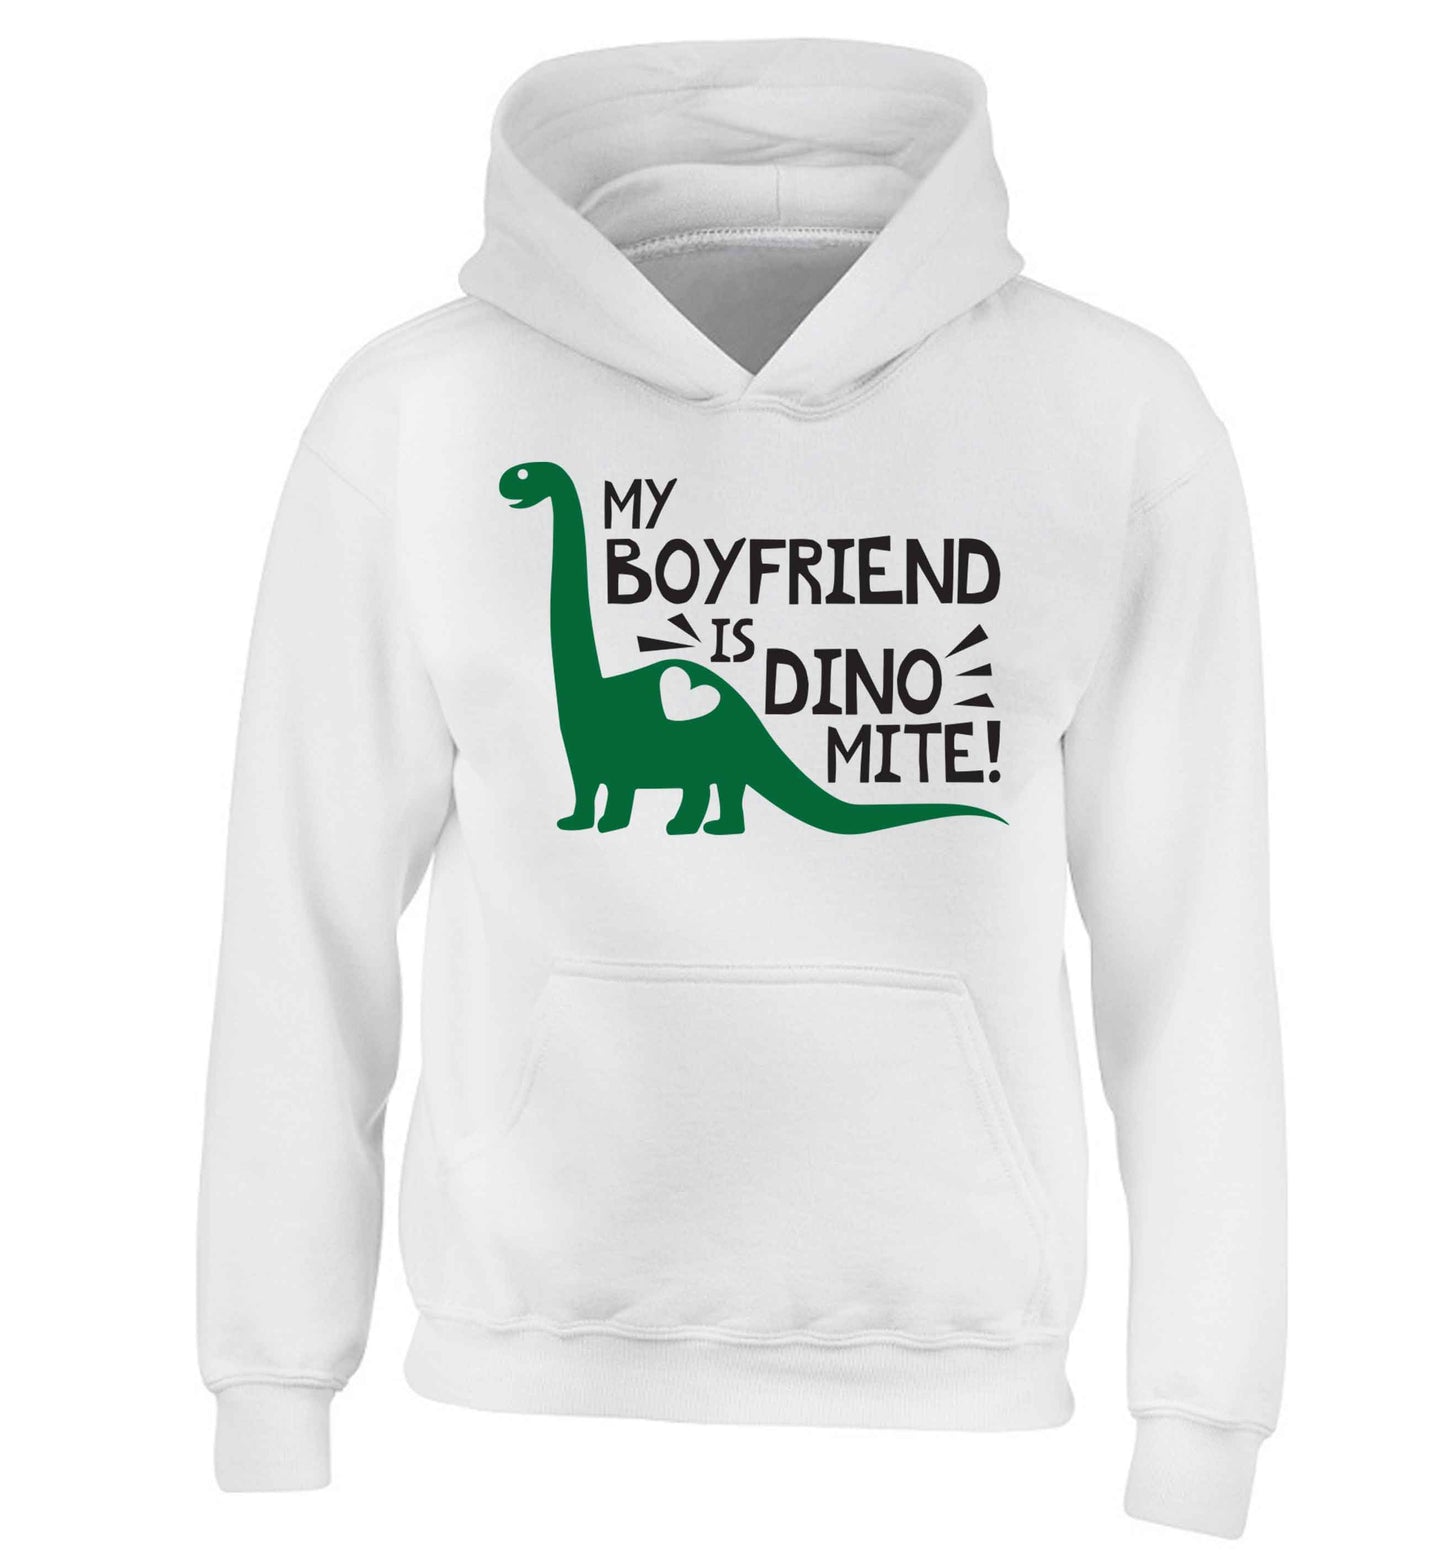 My boyfriend is dinomite! children's white hoodie 12-13 Years